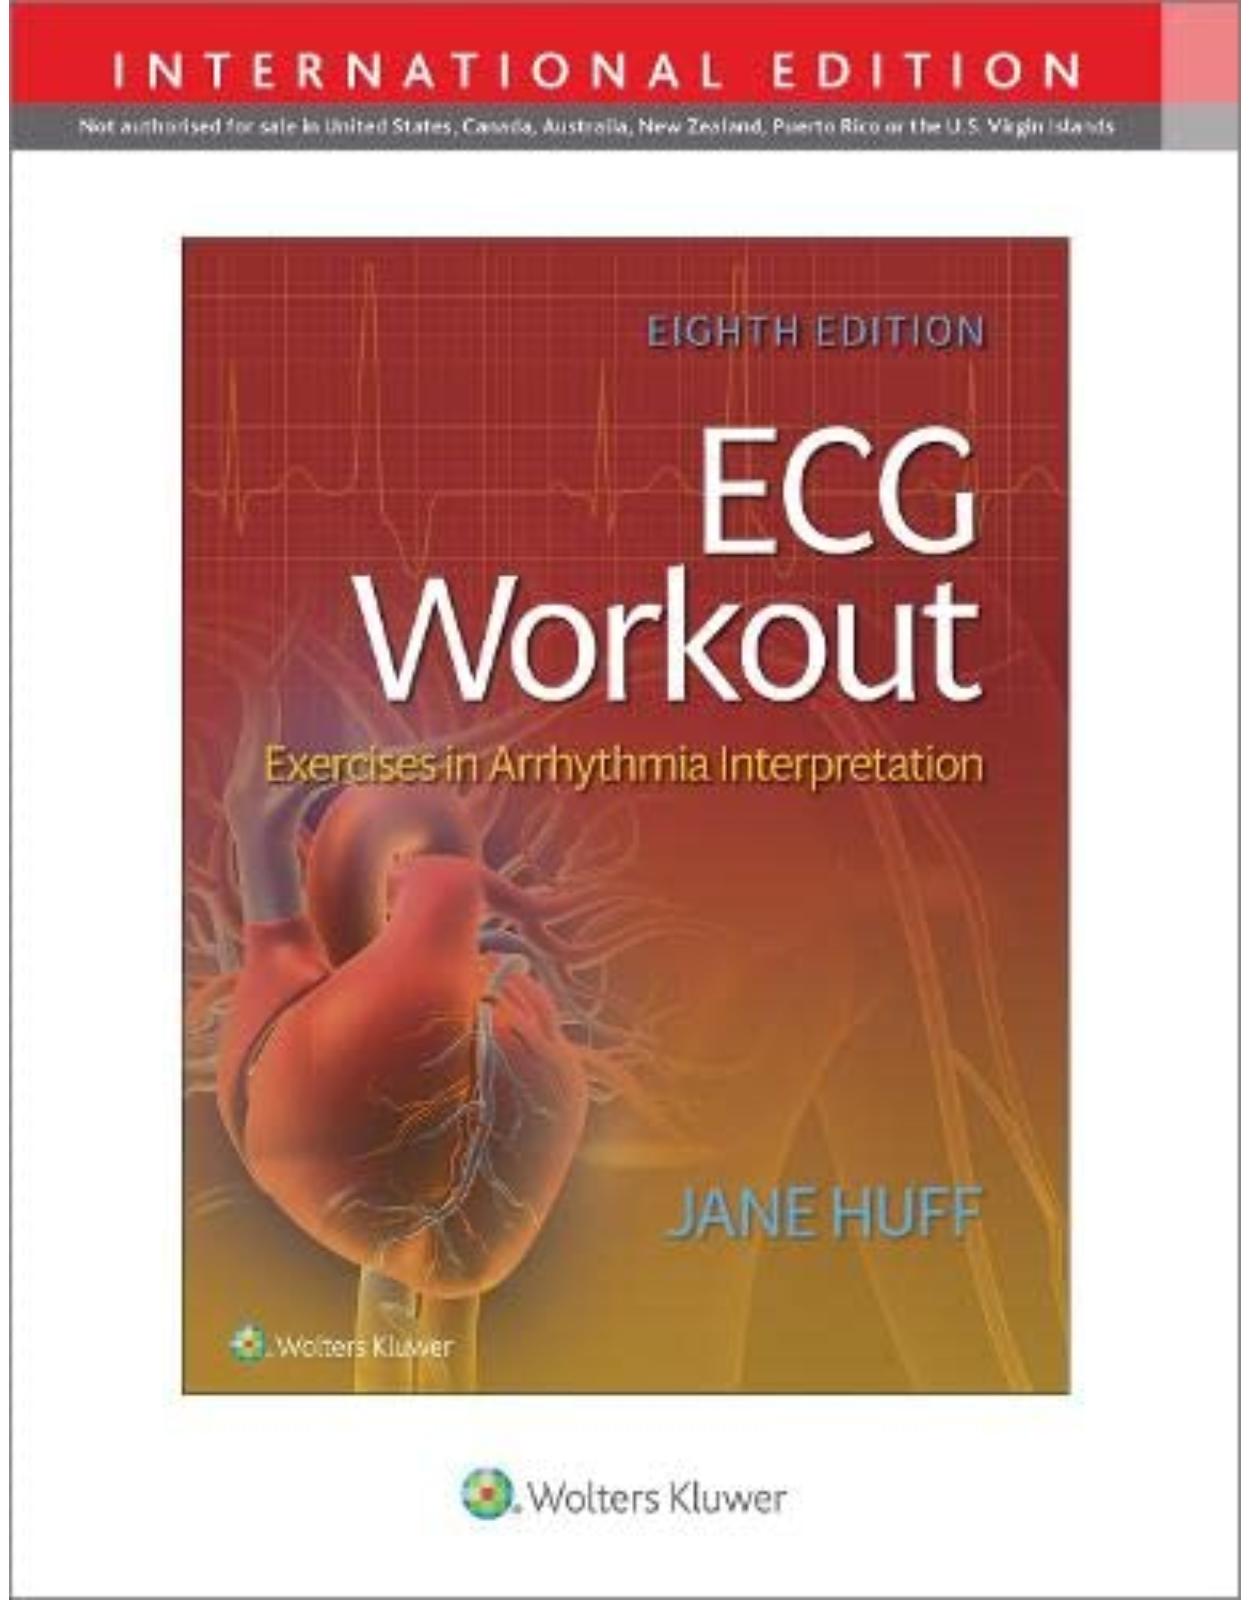 ECG Workout